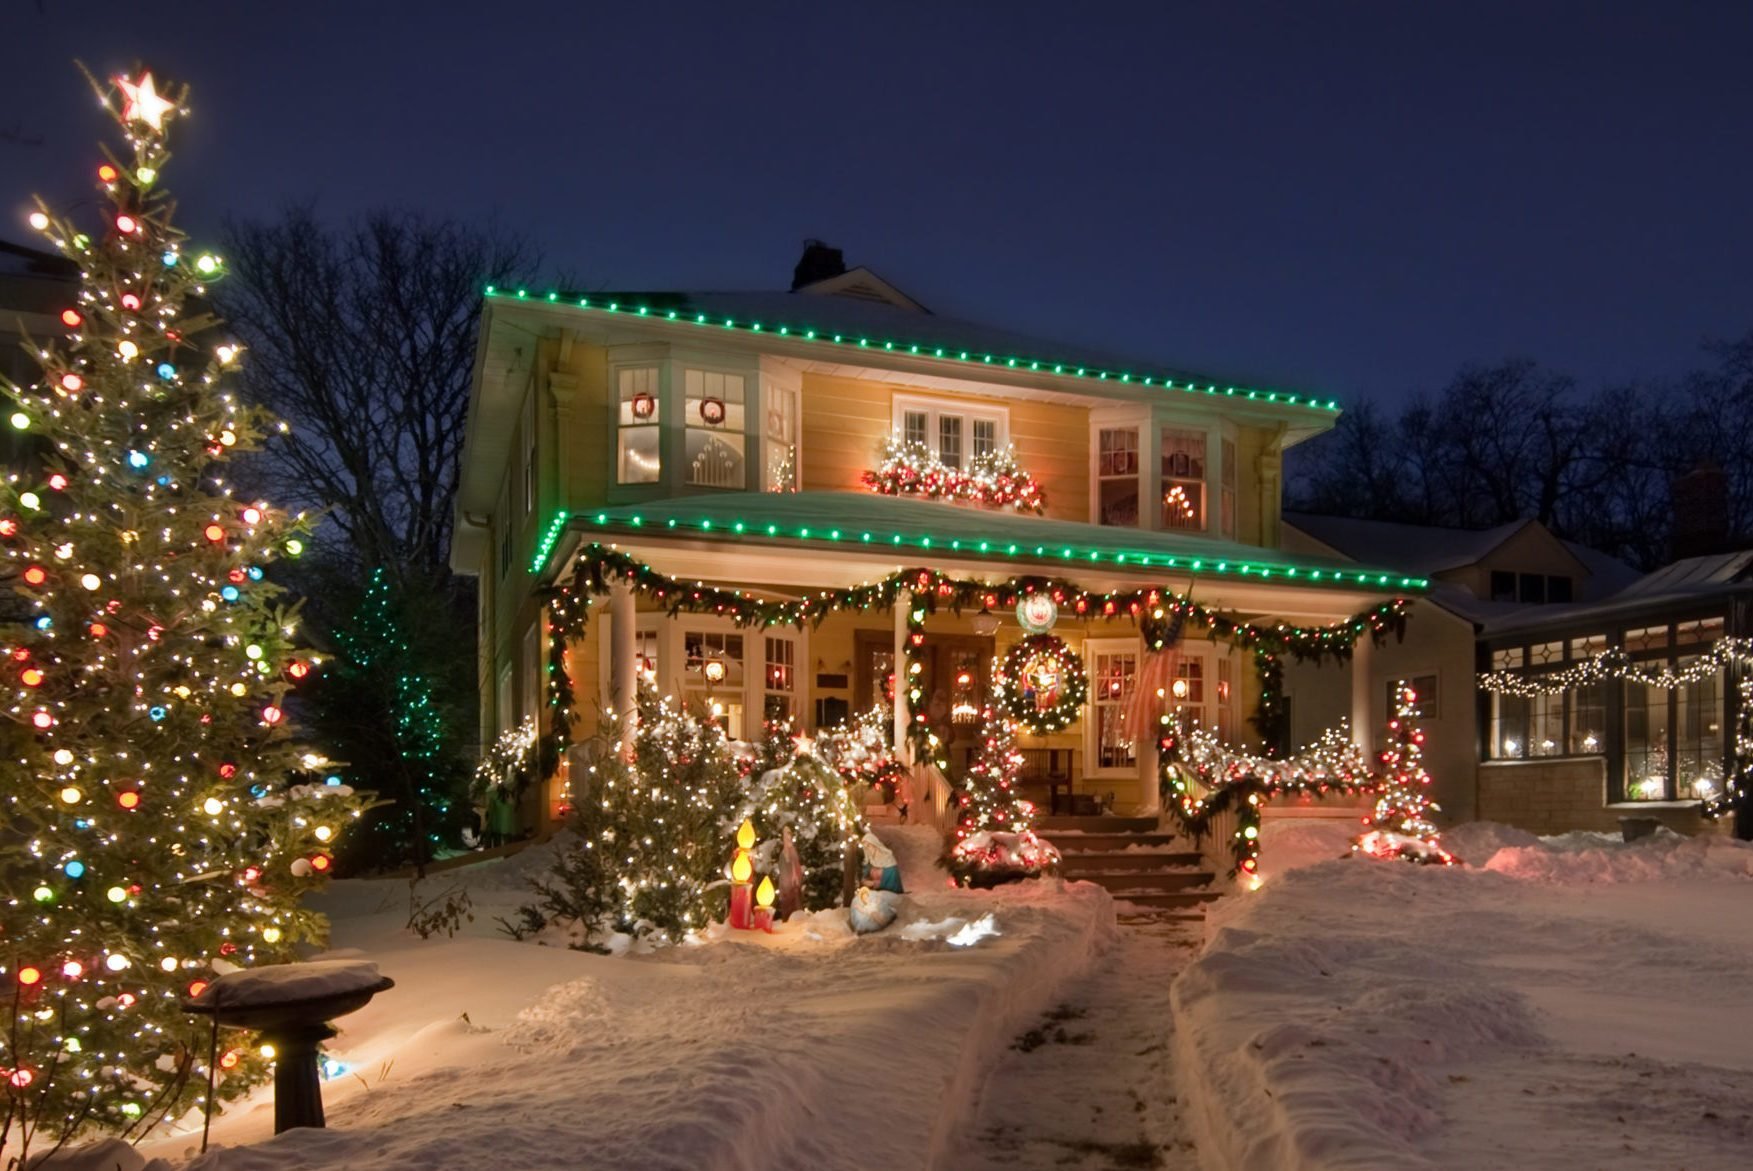 Best Outdoor Christmas Lights for the Best Neighborhood Display